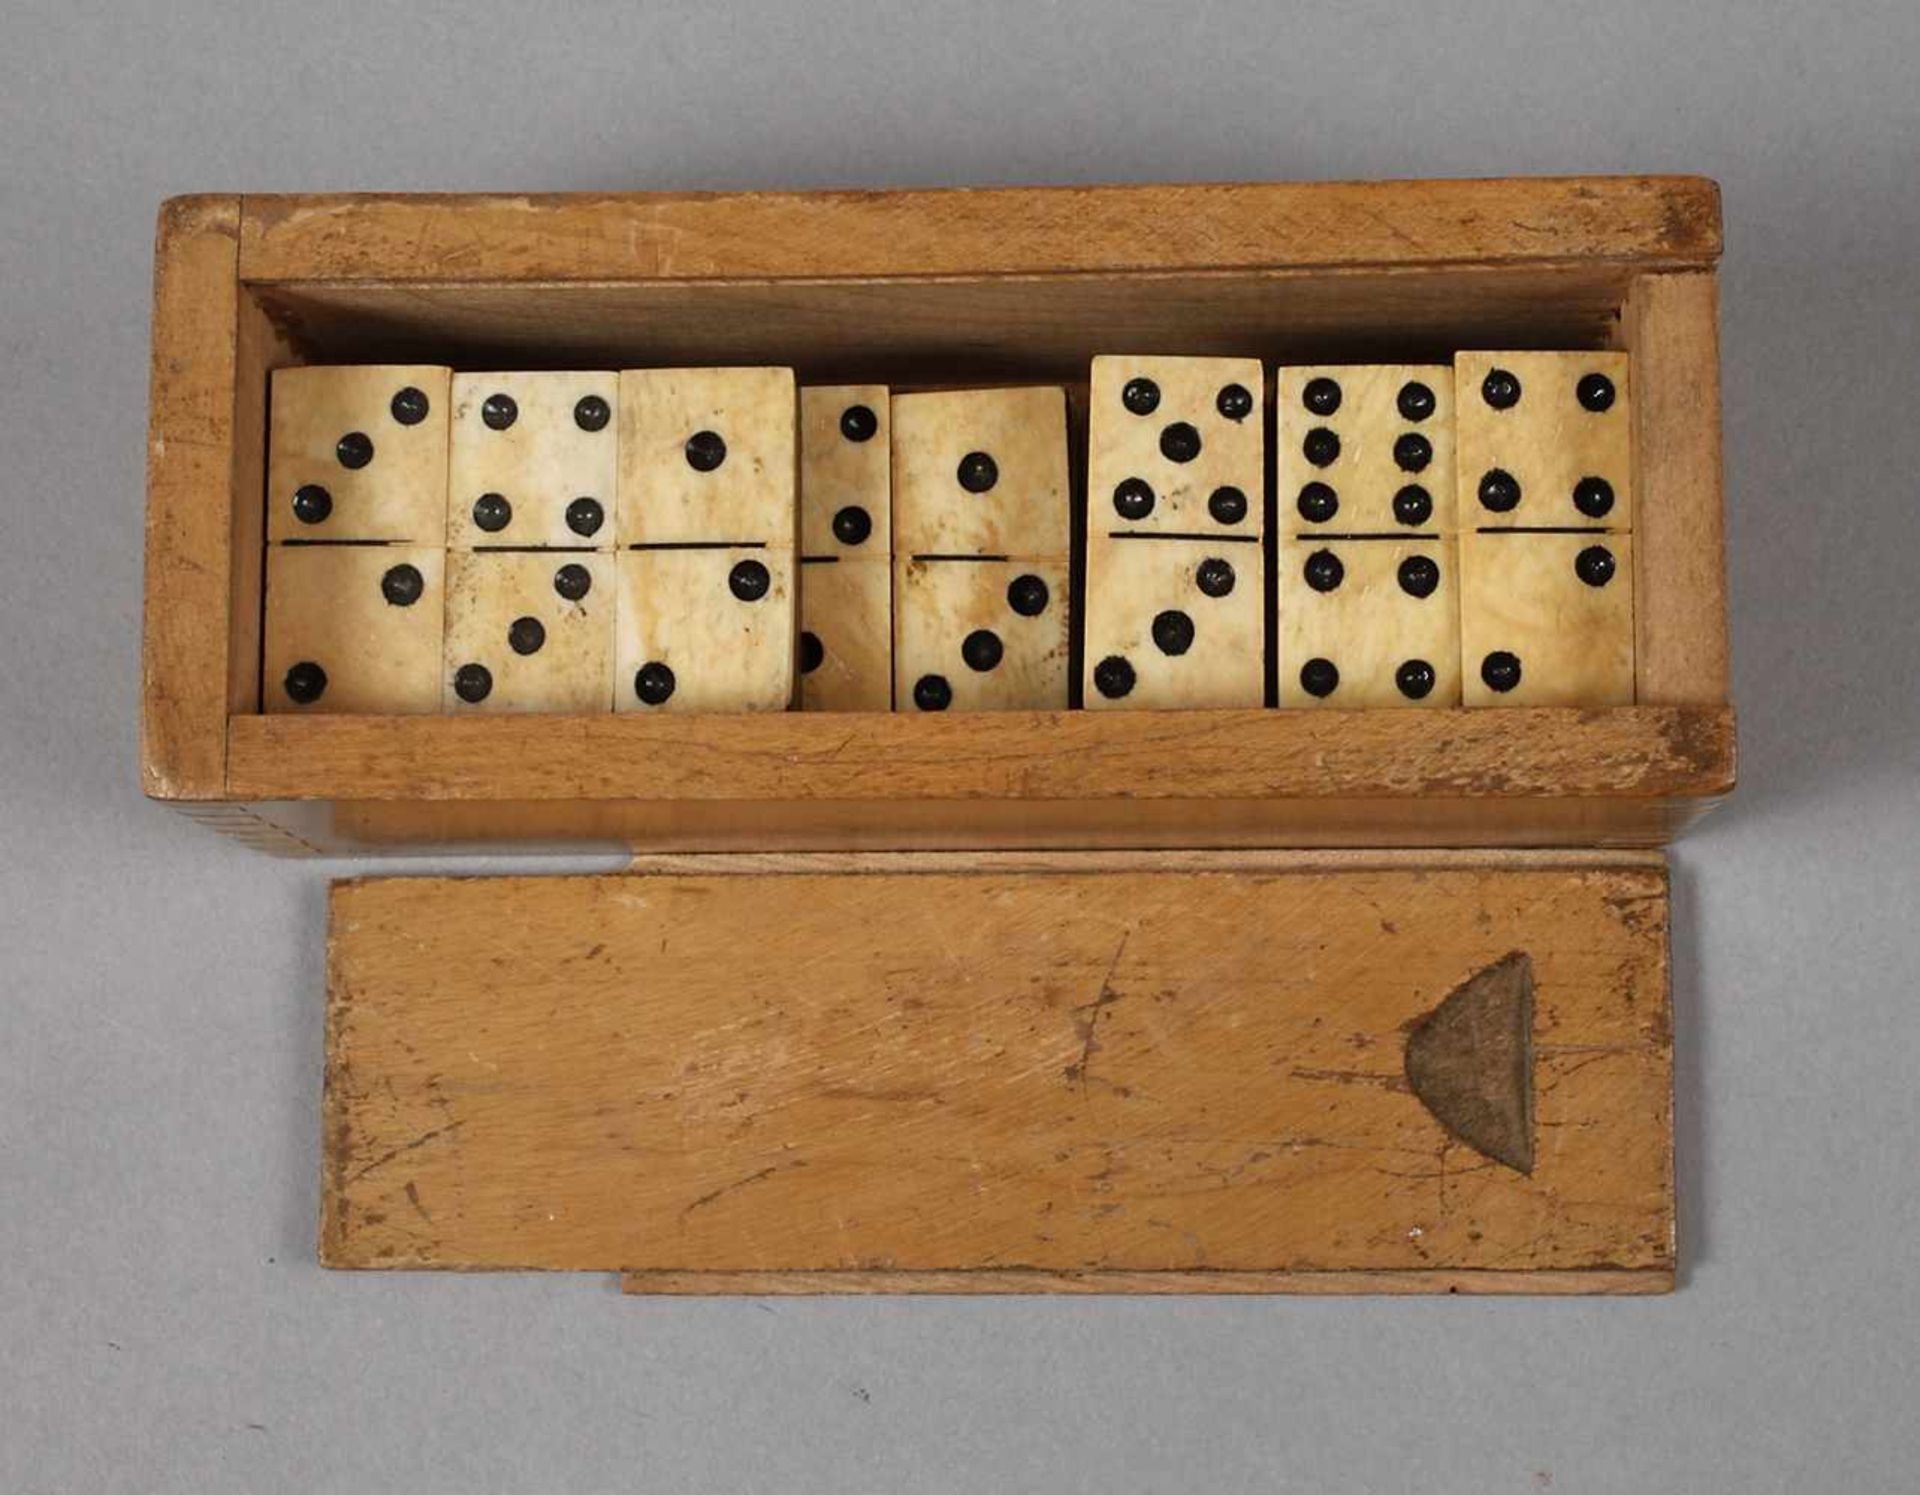 Domino19. Jh., 28 Steine aus Holz und Bein, teils geschwärzt, im Holzetui, Alters- und